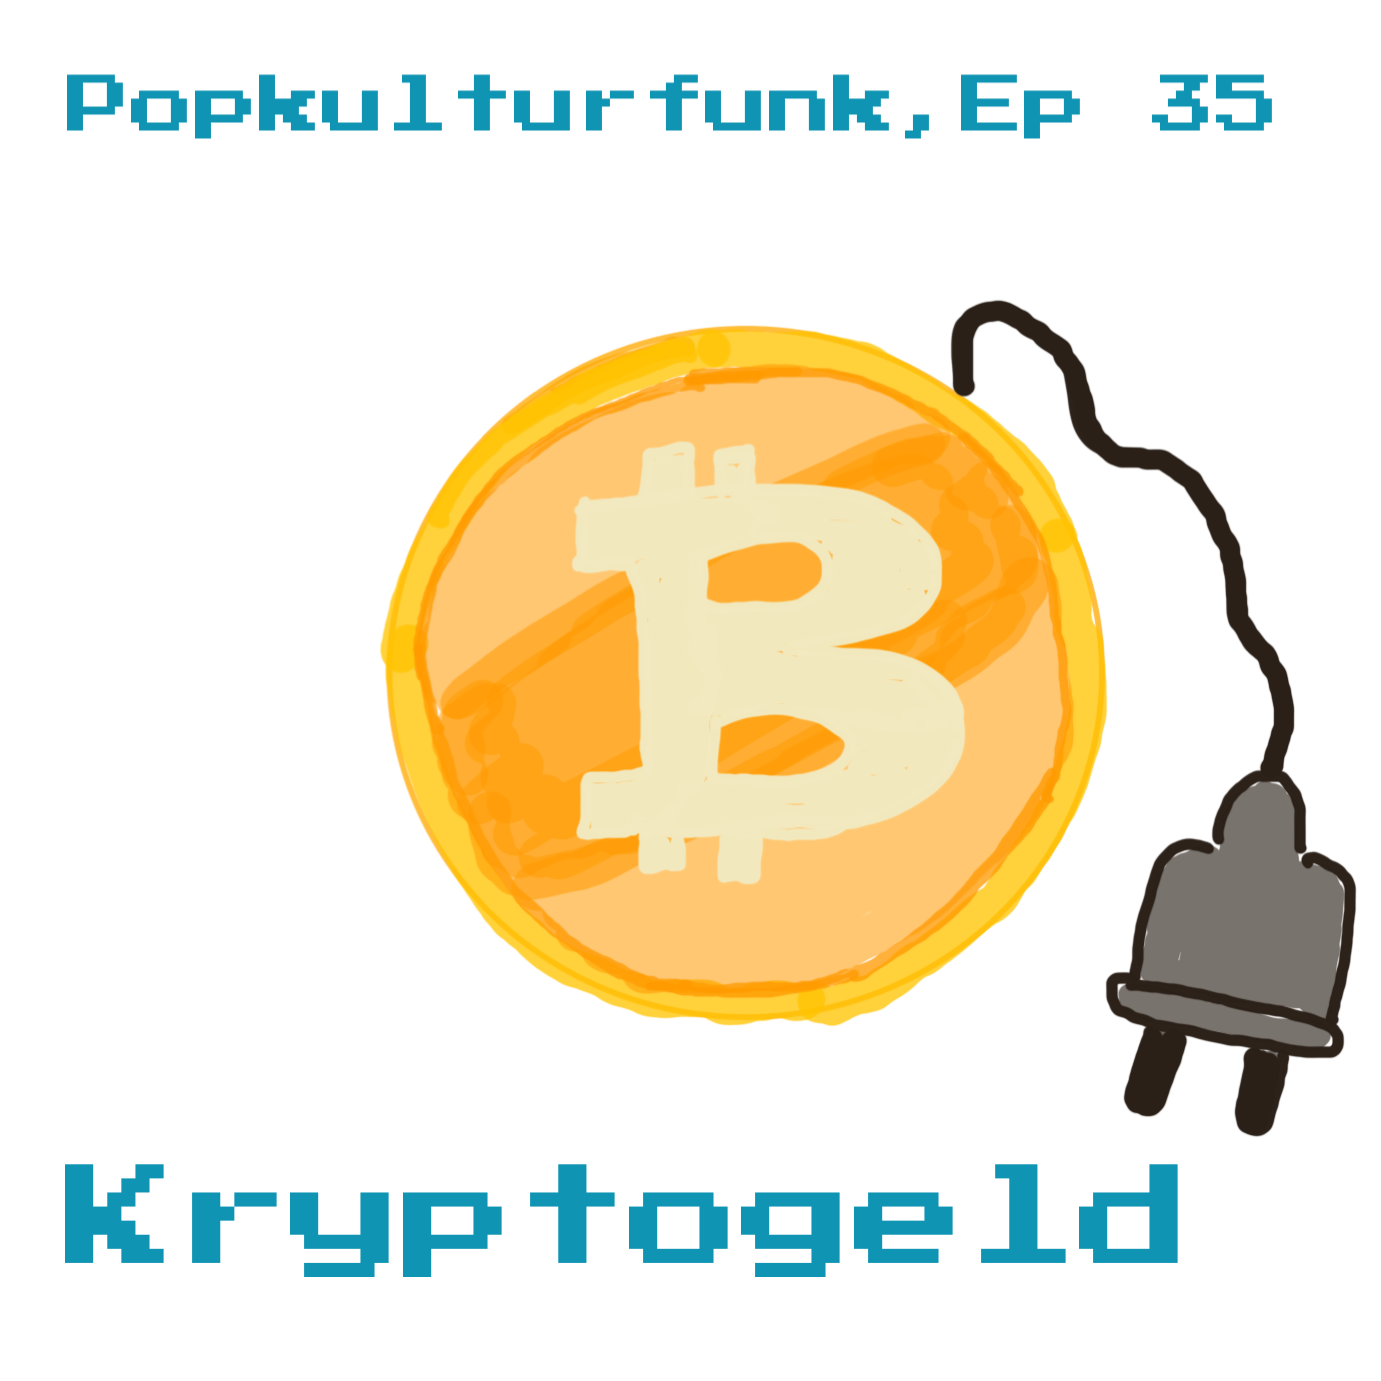 Episode 35: Kryptogeld